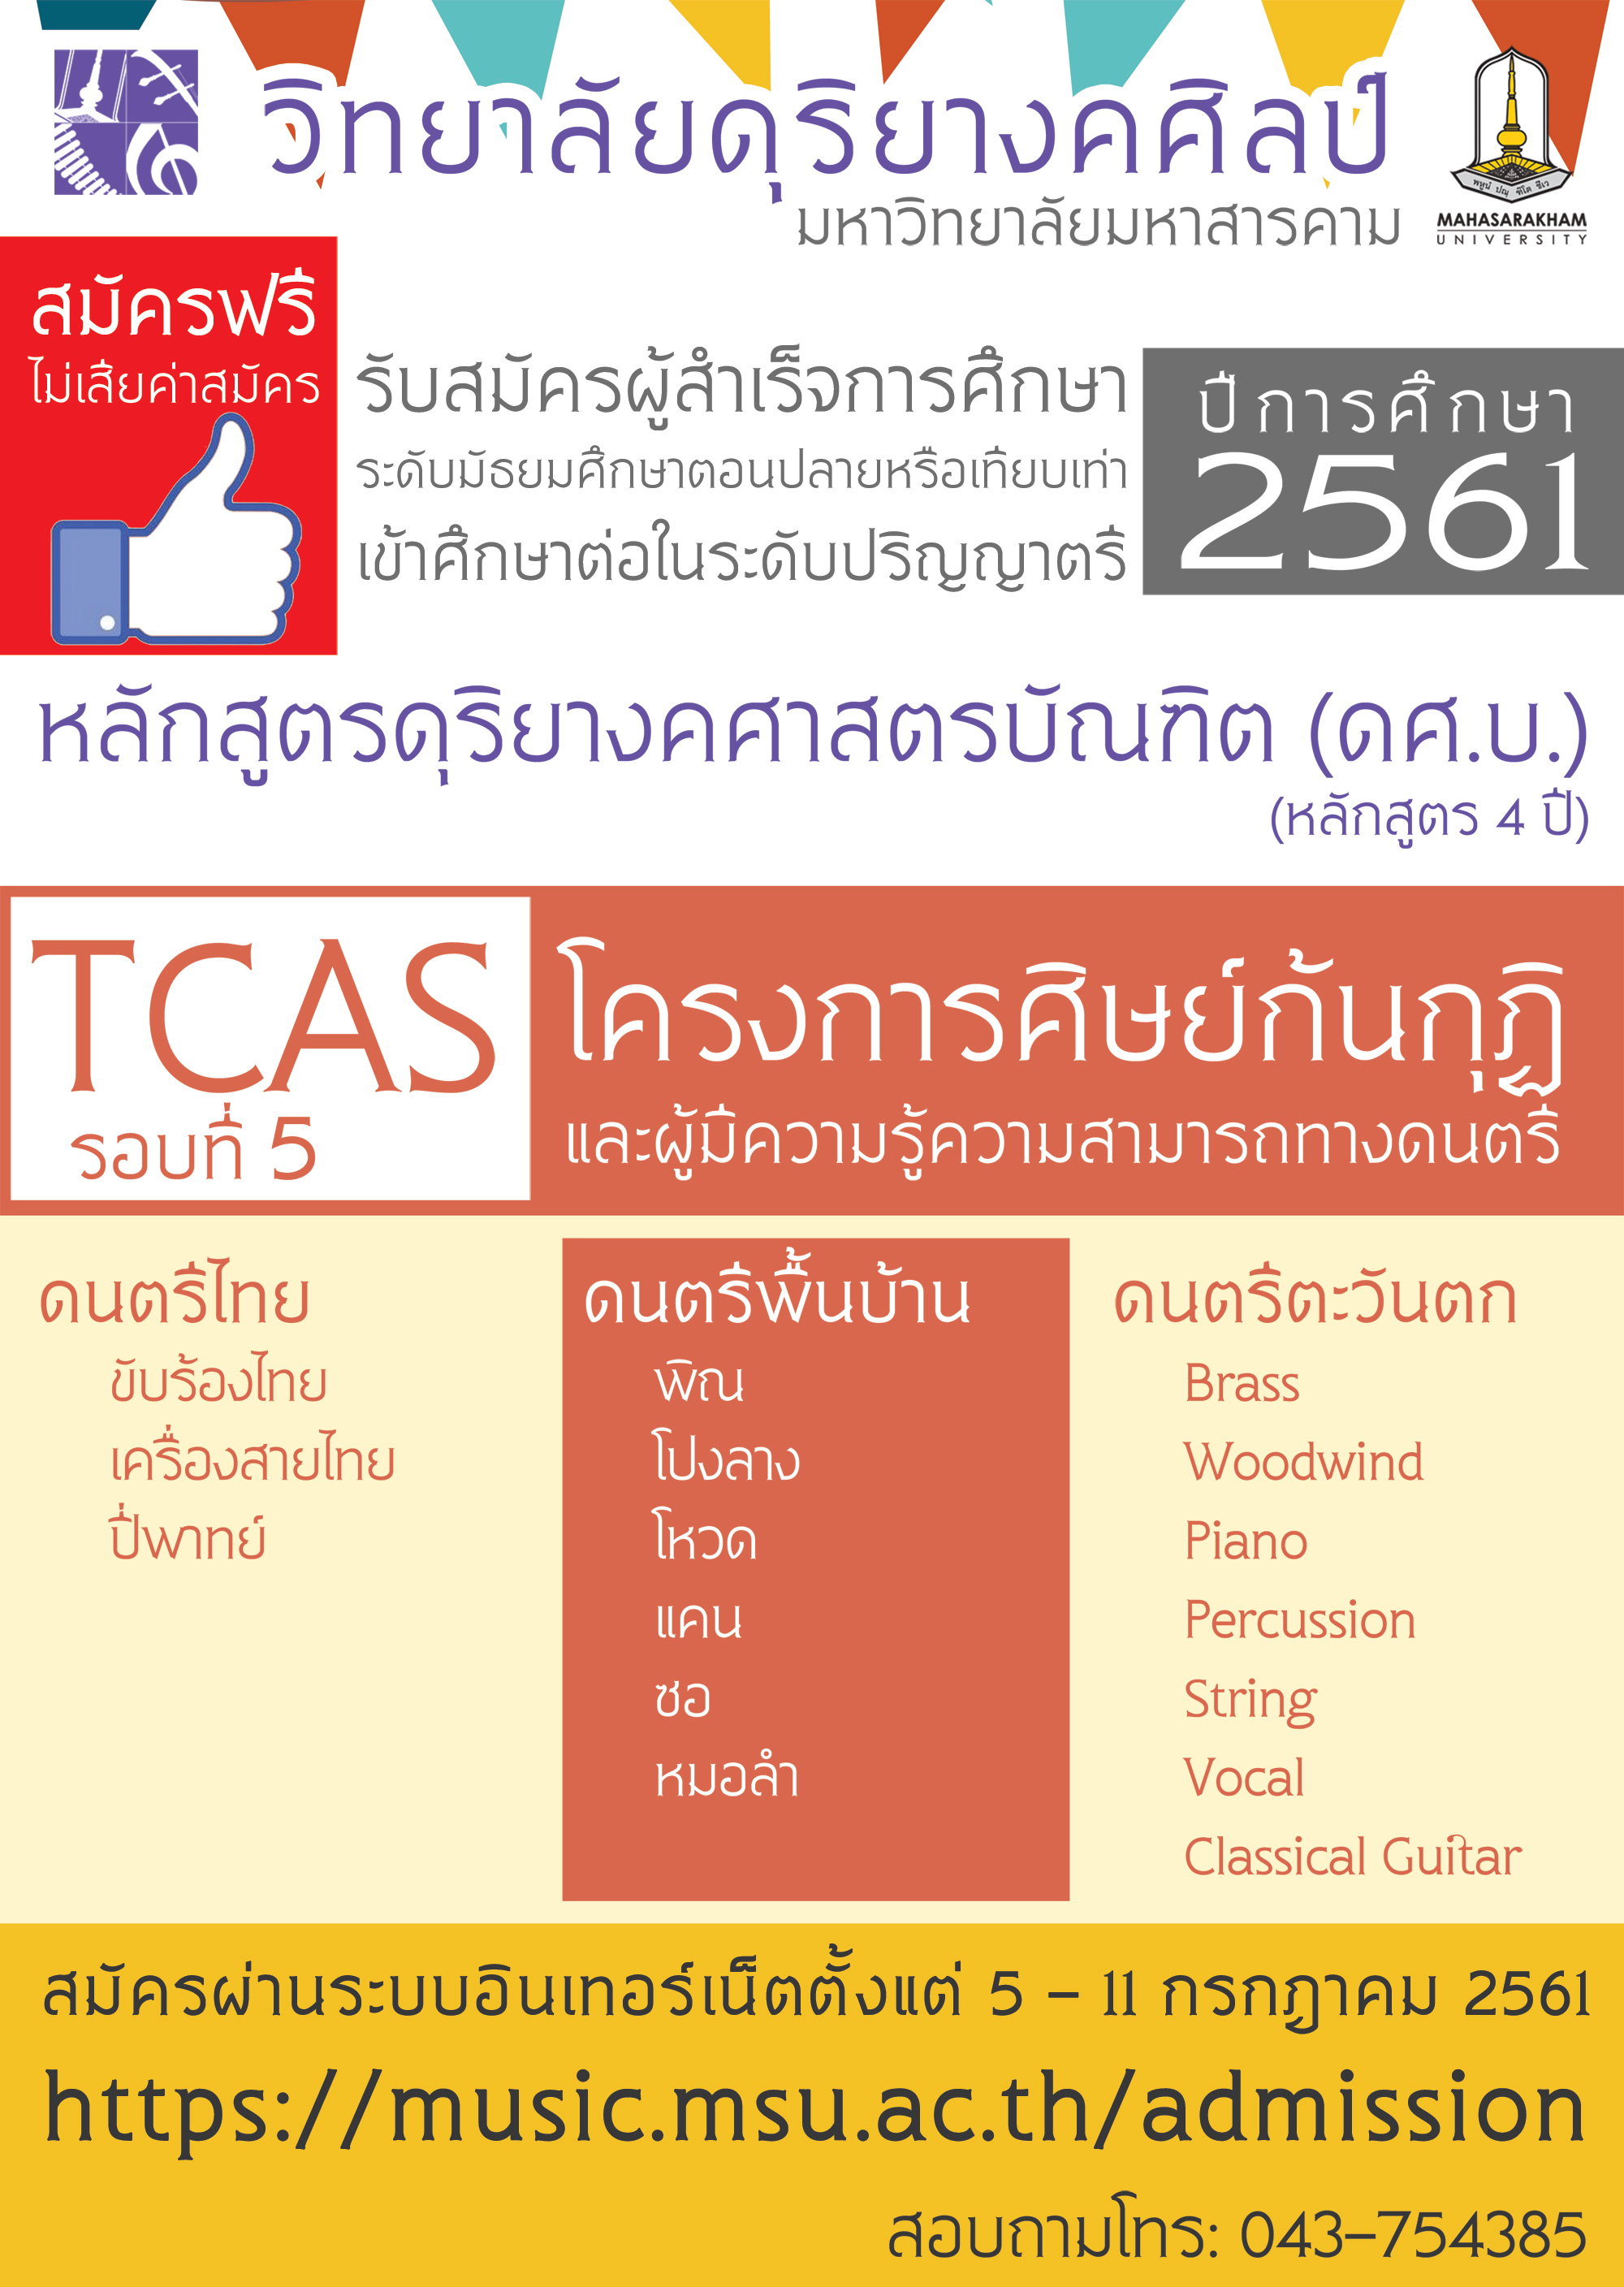 Attachment TCAS-music-2561-5.jpg